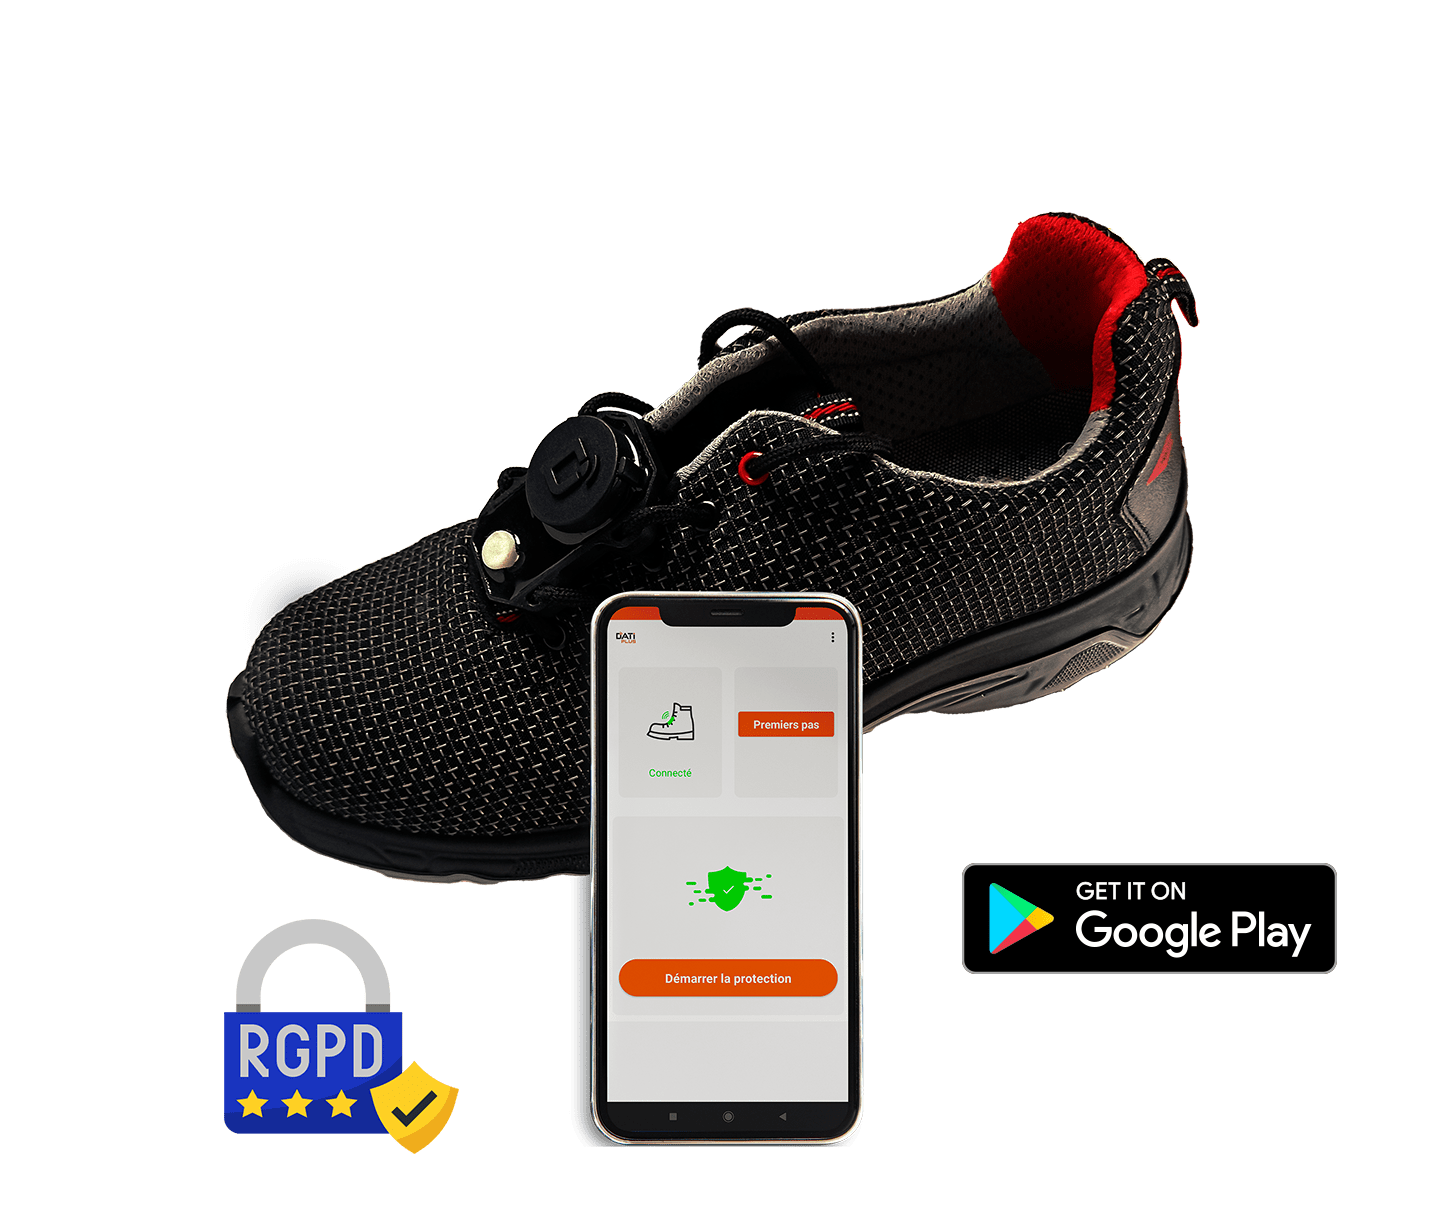 graphisme datiplus connect accompagné d'un smartphone, disponible sur le google play store. Protection selon les lois RGPD